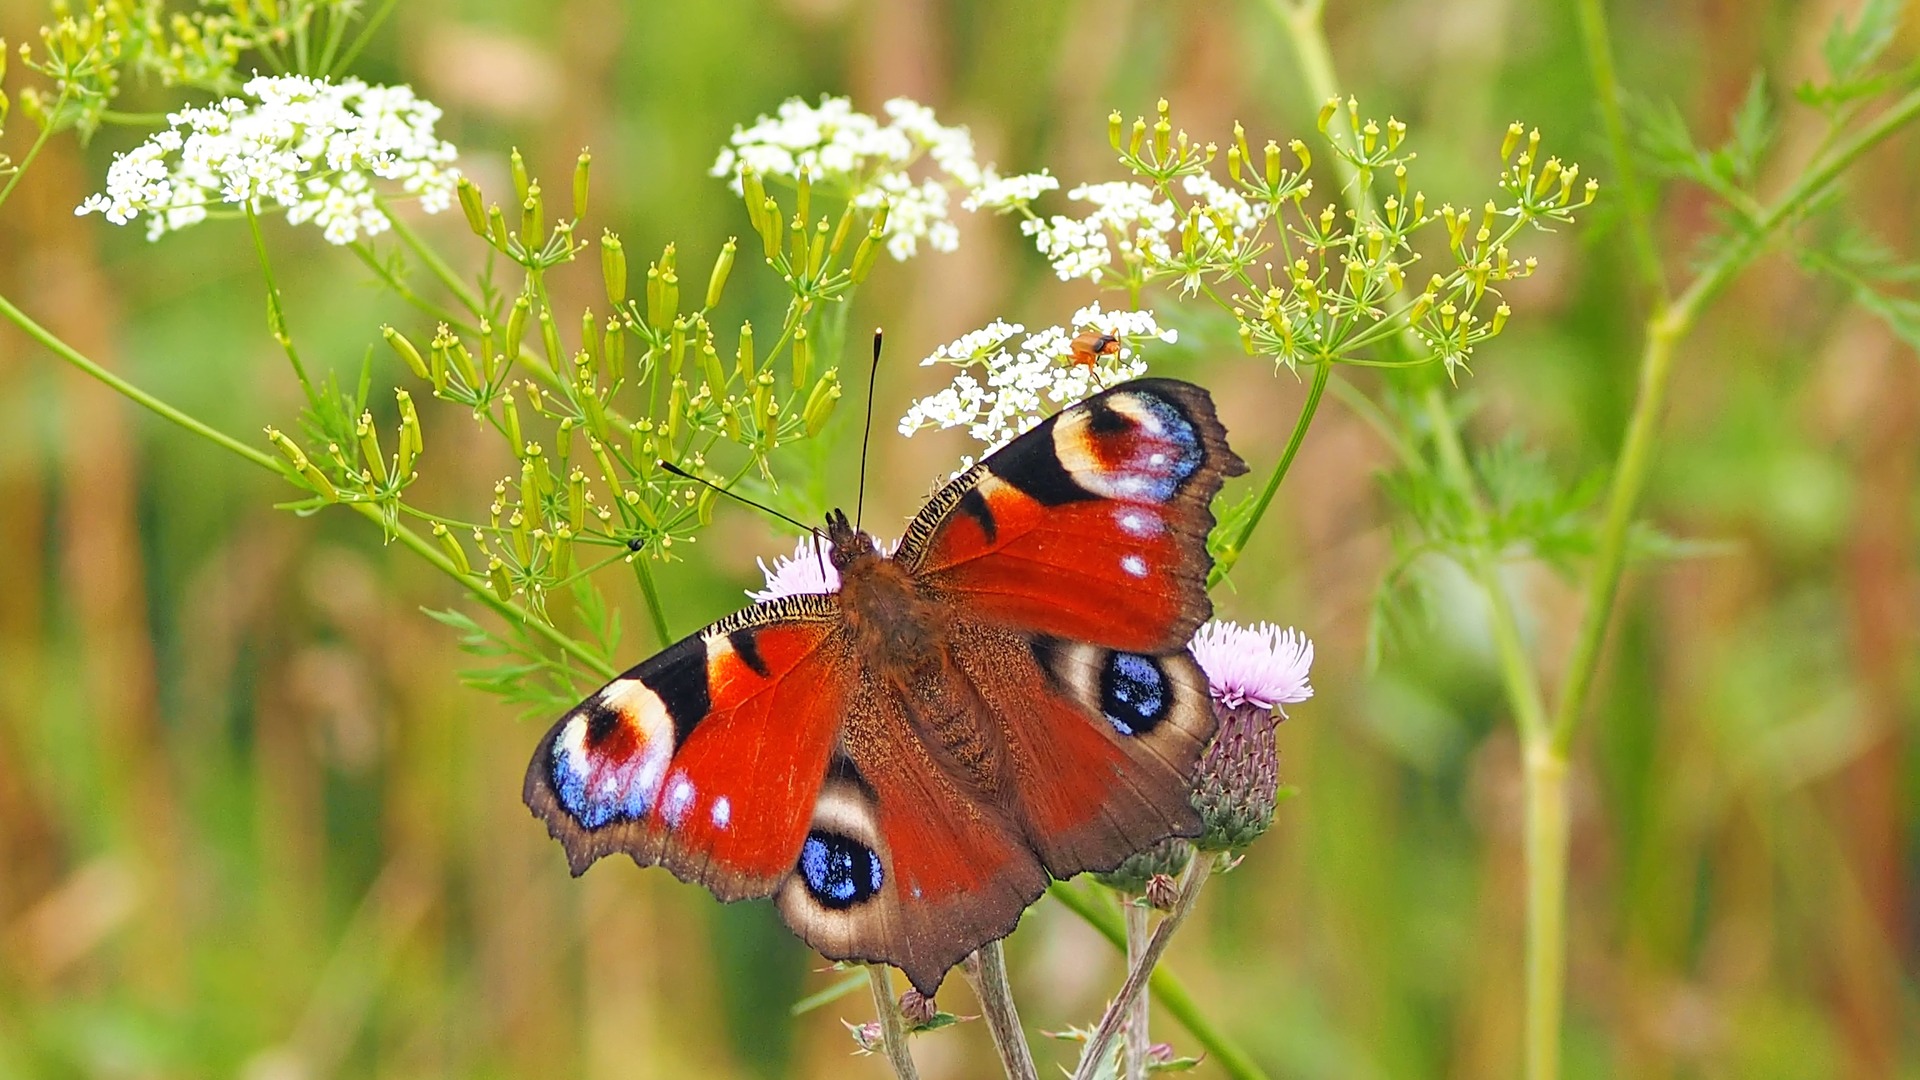 Rusałka pawik (Aglais io) – gatunek motyla, który jest w Polsce jednym z najbardziej pospolitych motyli.